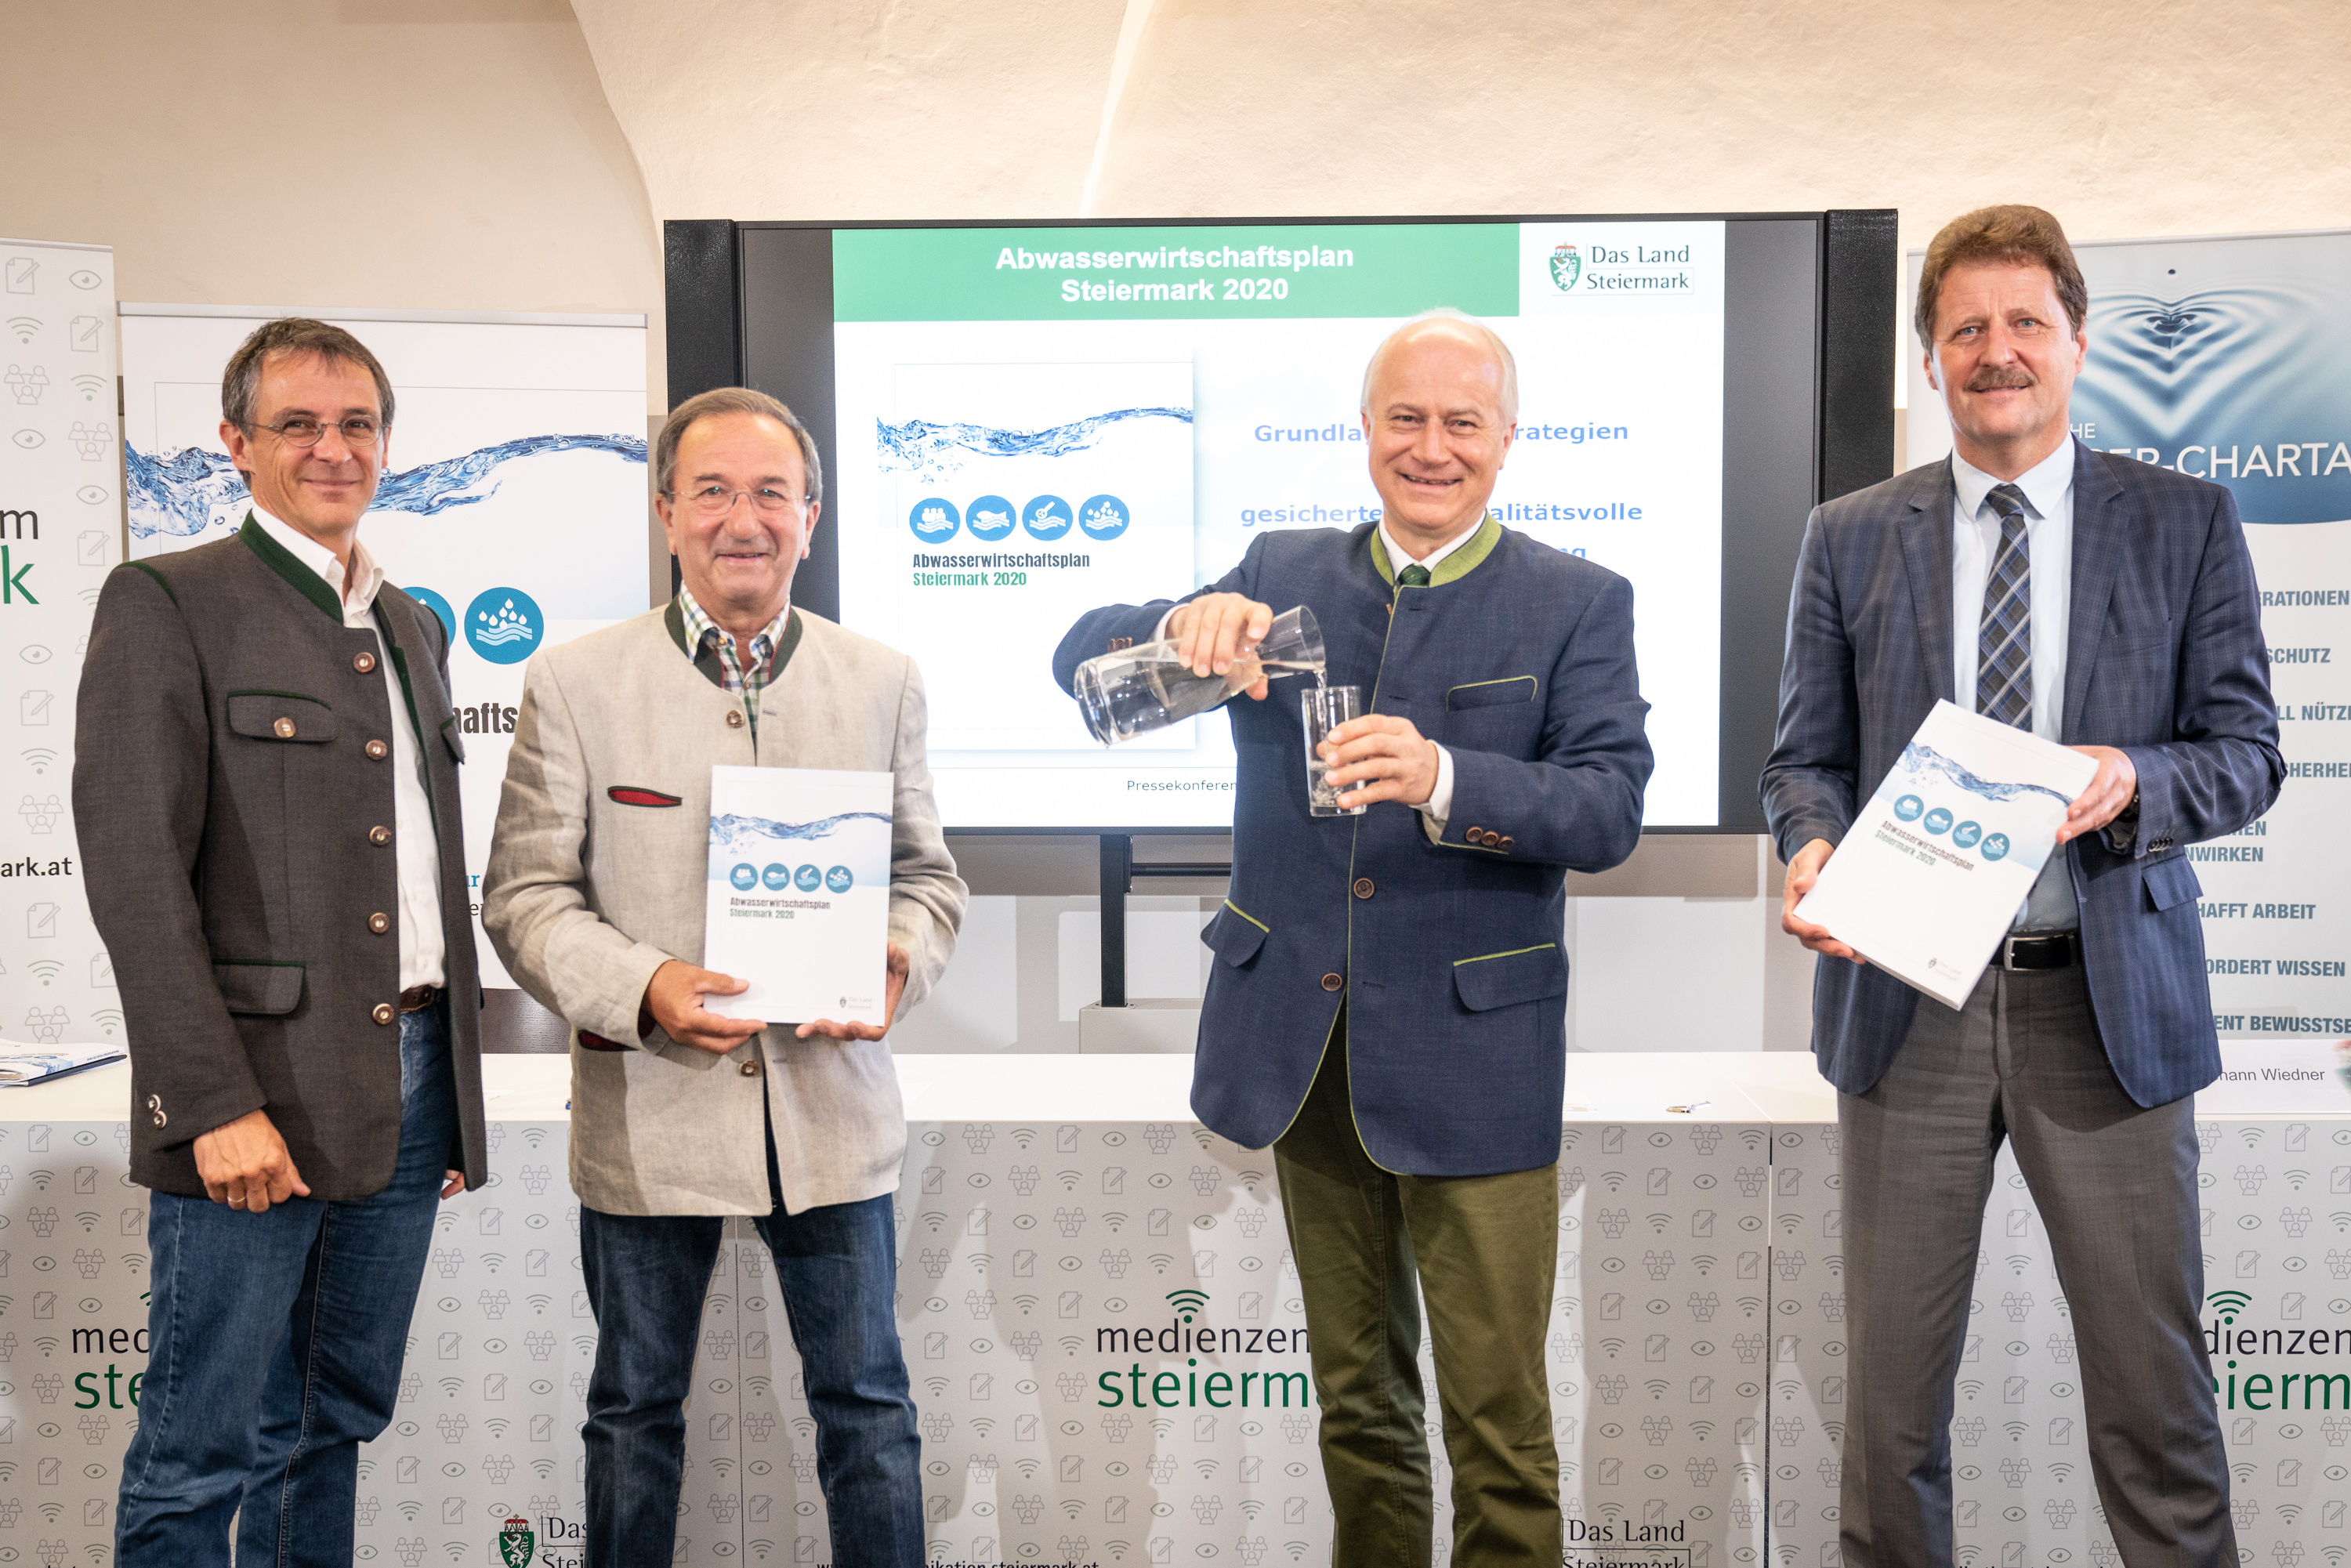 Pressekonferenz Abwasserwirtschaftsplan Steiermark 2020